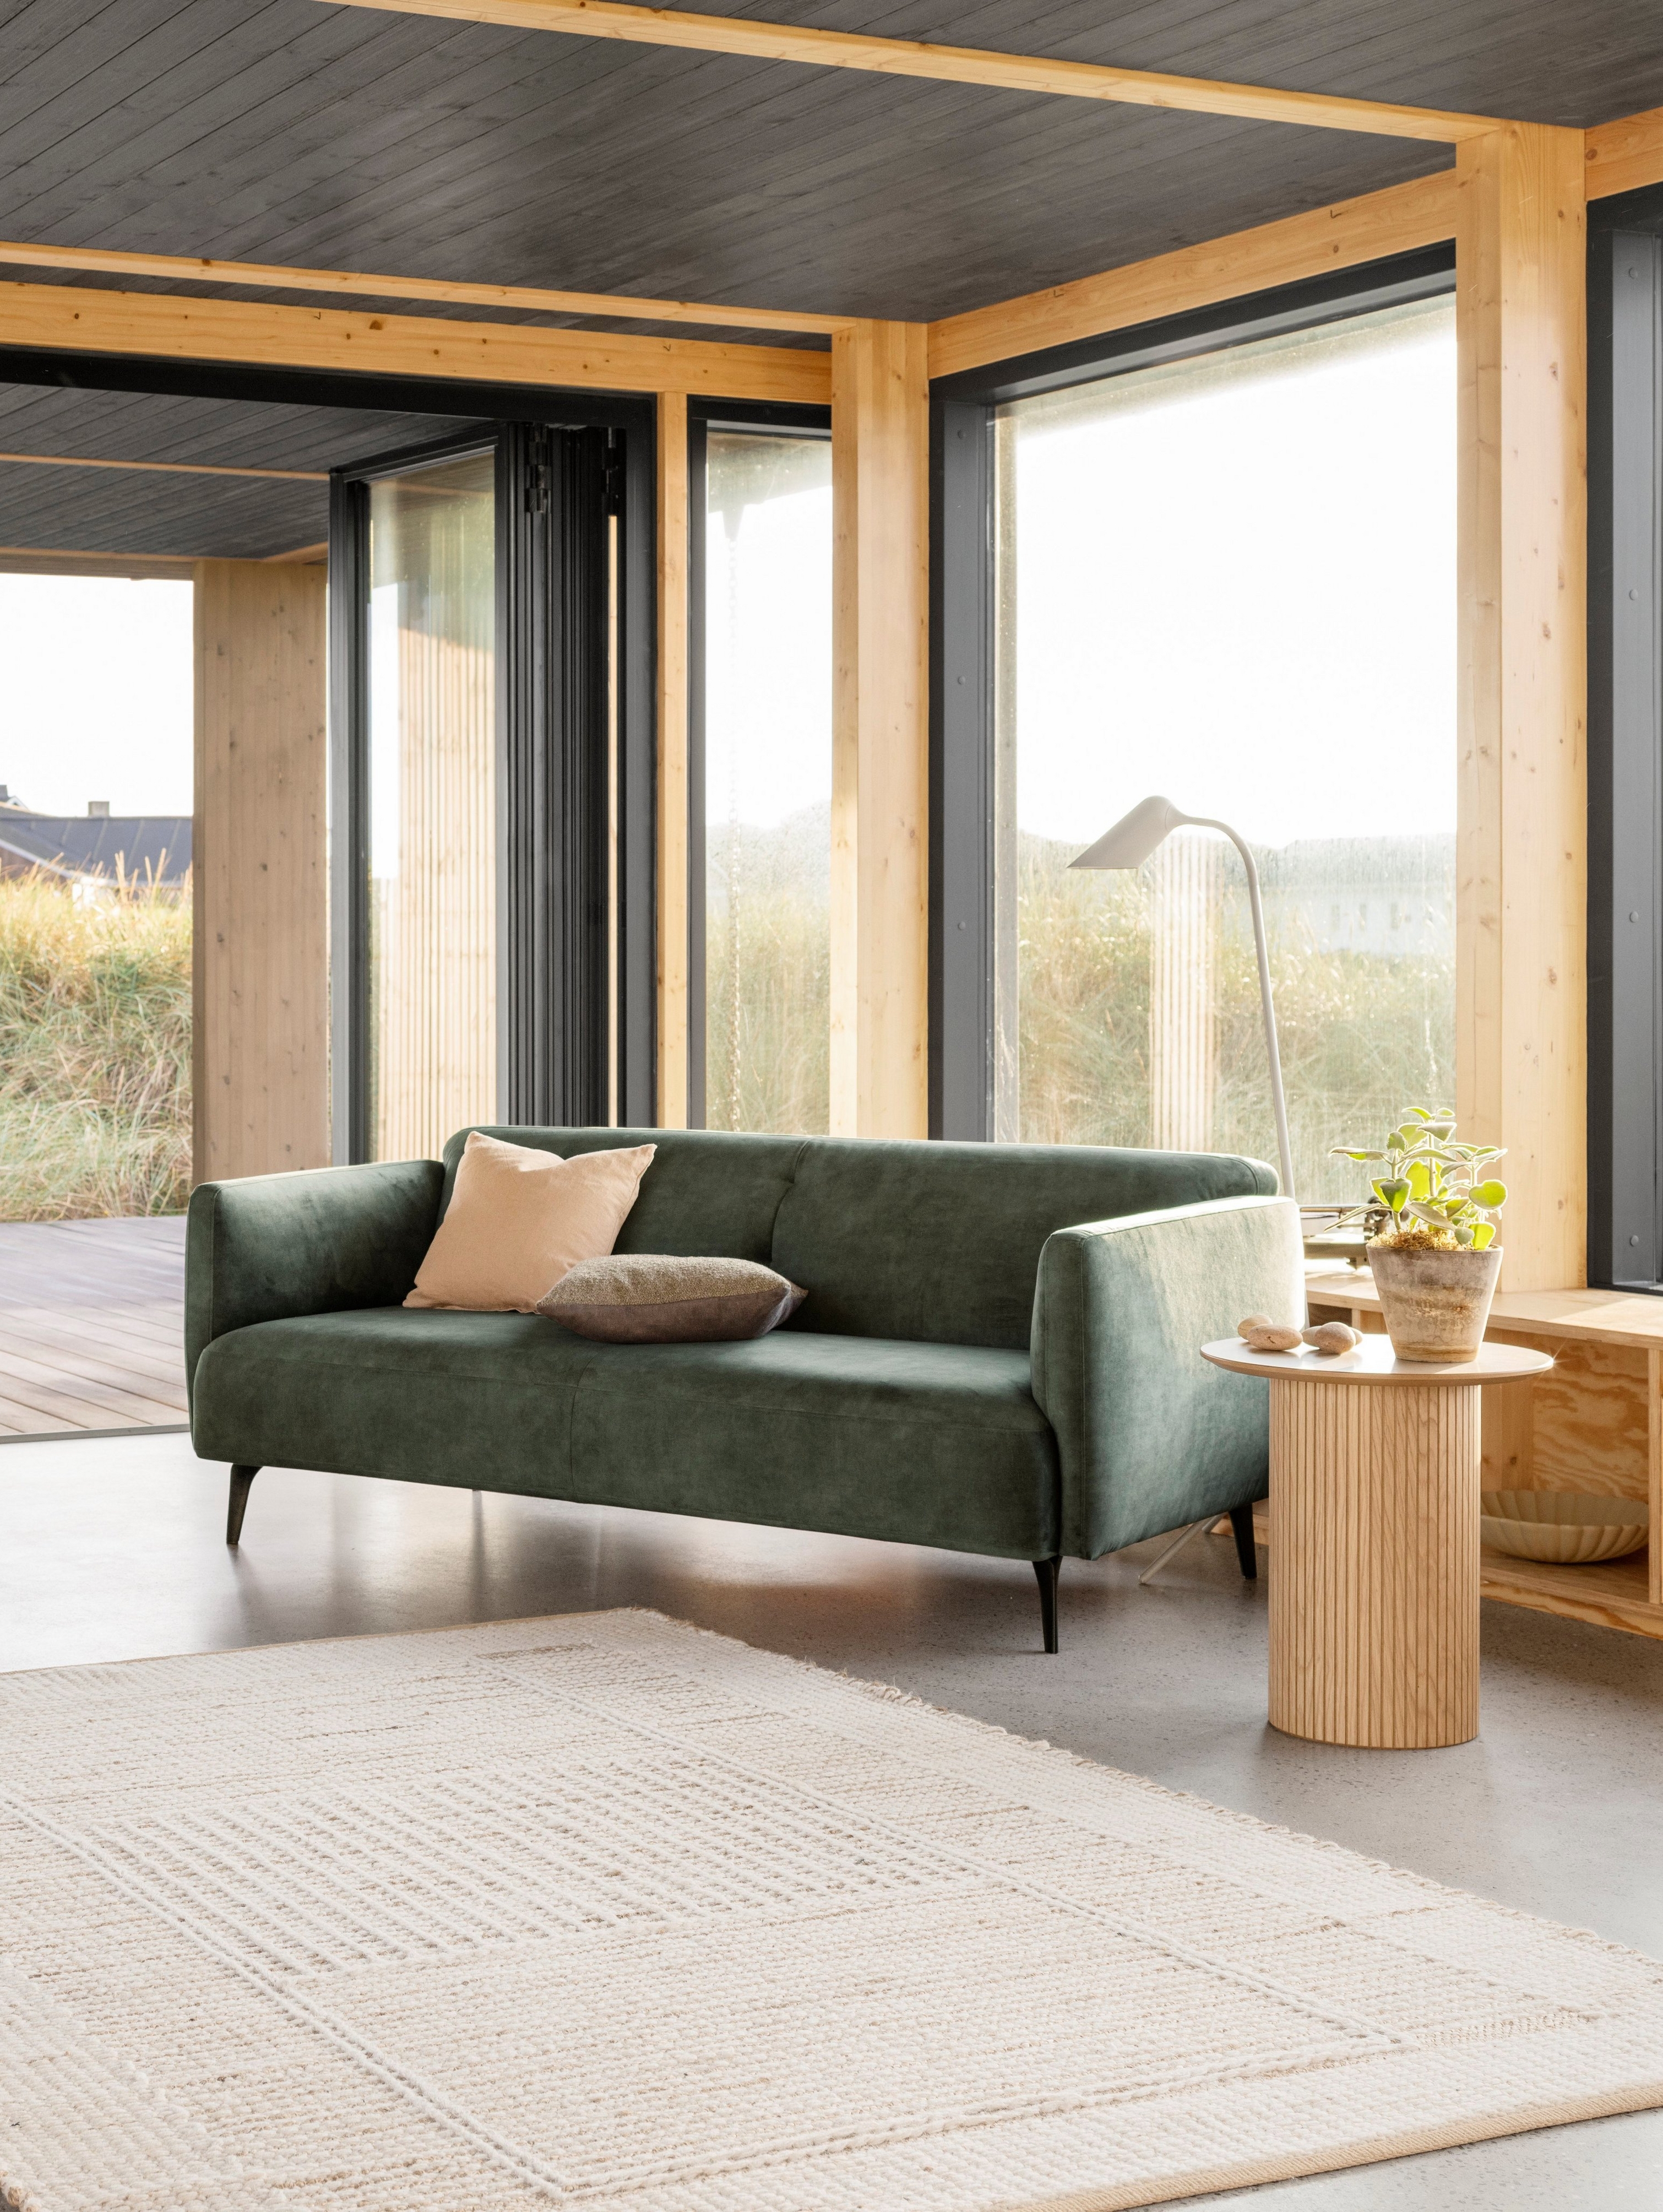 De elegante Modena zitbank en bijpassende fauteuil in groene Ravello stof staan naast een open haard in deze warme woonkamer.